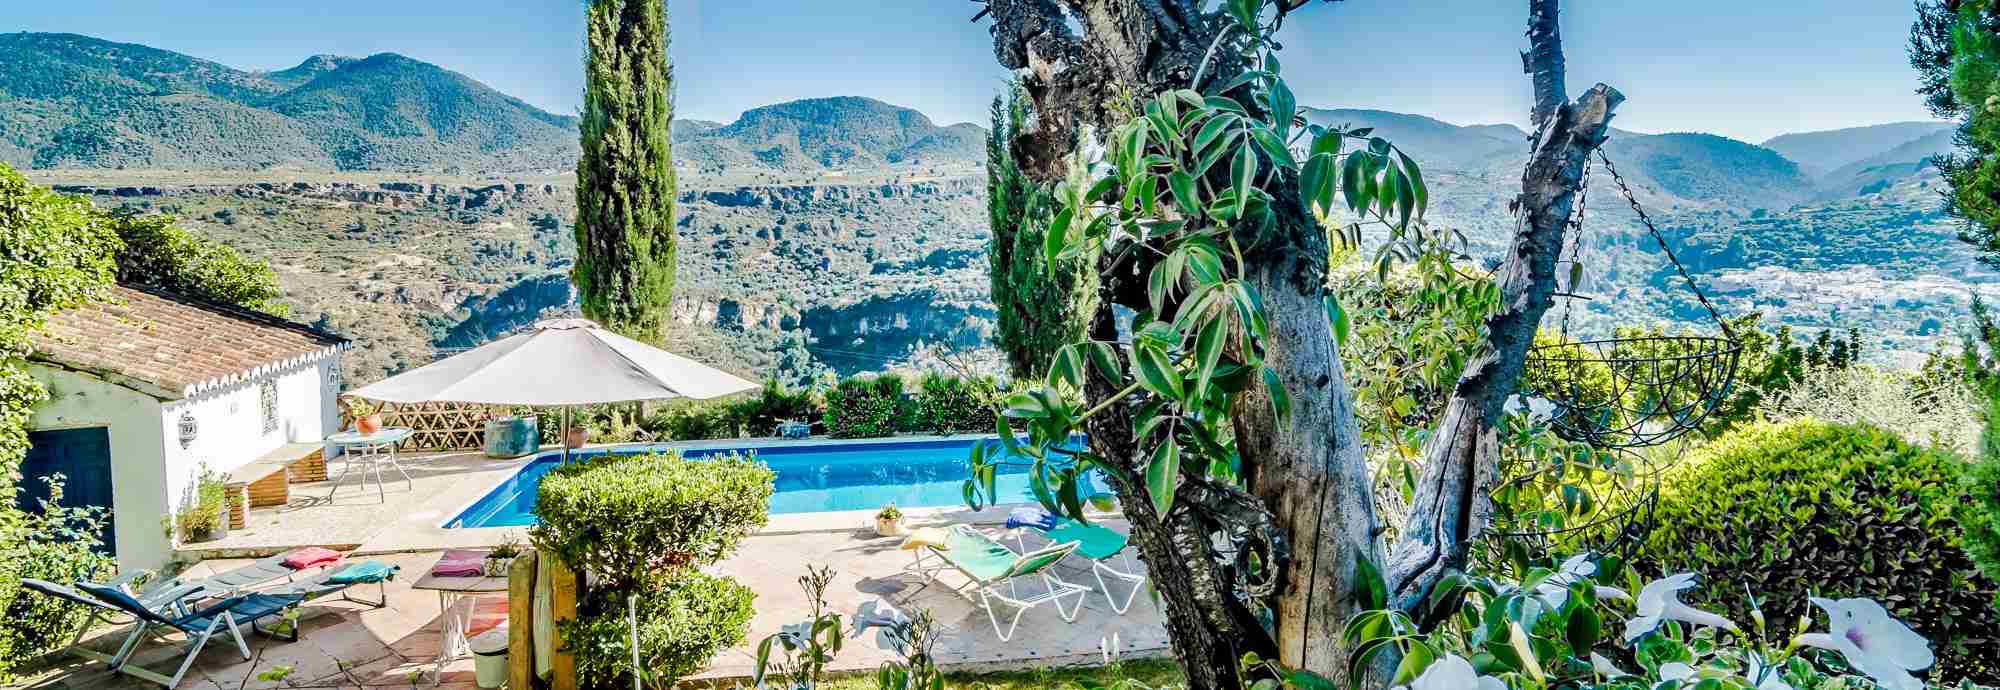 Granada villa rental with private pool in a semi-tropical valley